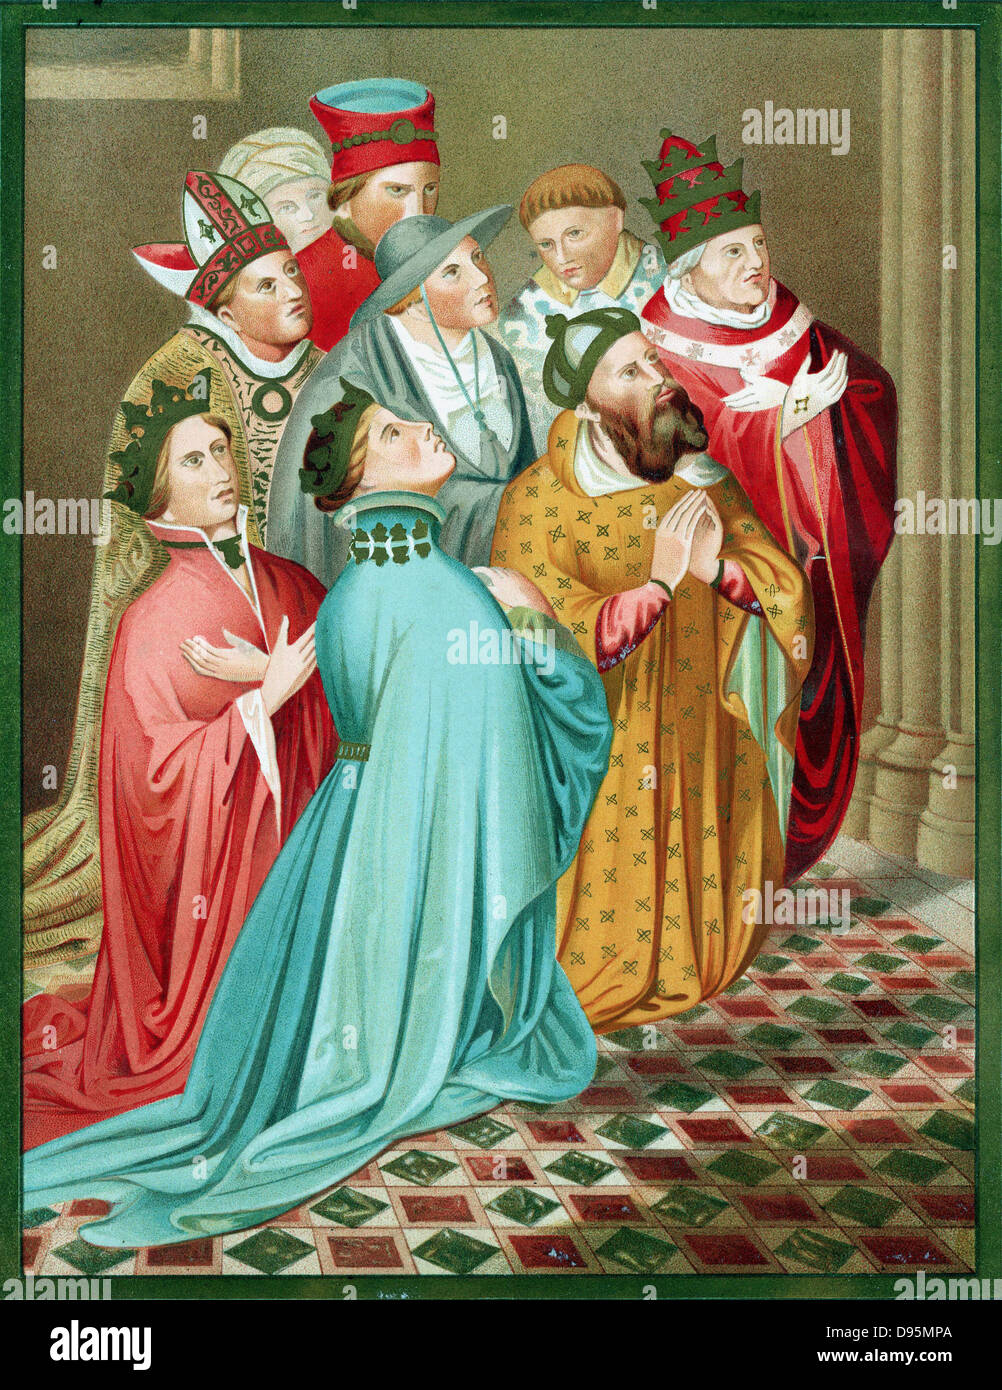 Ferdinando I d'Aragona e la sua regina, con Sigismondo (1368-1437) Sacro Romano Imperatore da 1433 e papa Martino V (1368-1431) al tempo del Concilio di Costanza 1417. Dopo Chromolithograph Carderera "Iconografia Espanola' Foto Stock